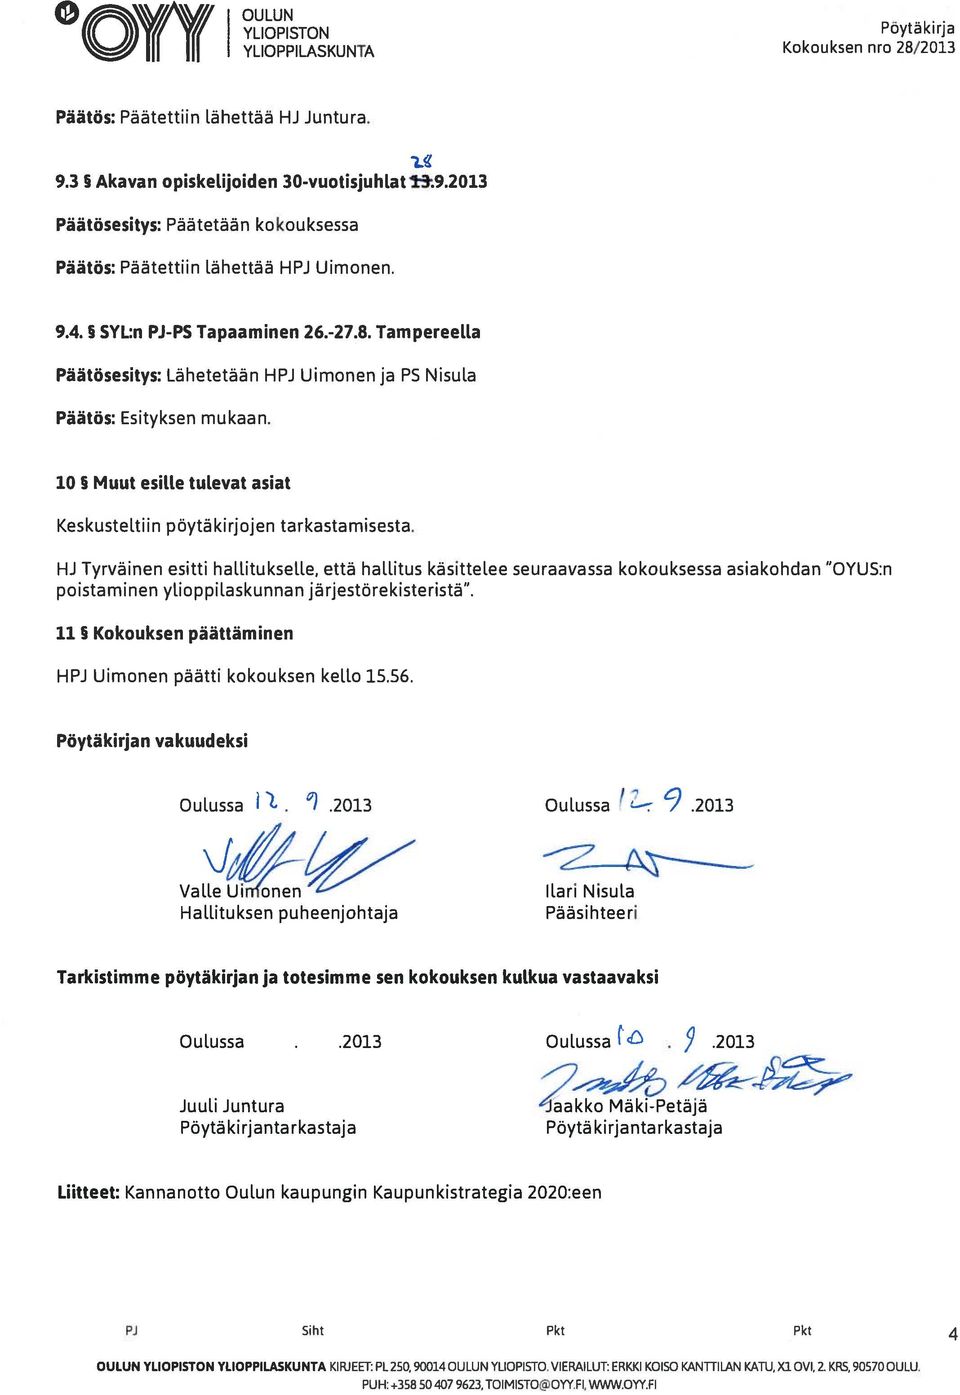 Tampereelta Päätösesitys: Lähetetään HPJ Uimonen ja PS Nisula 10 Muut esille tulevat asiat Keskusteltiin pöytäkirjojen tarkastamisesta.